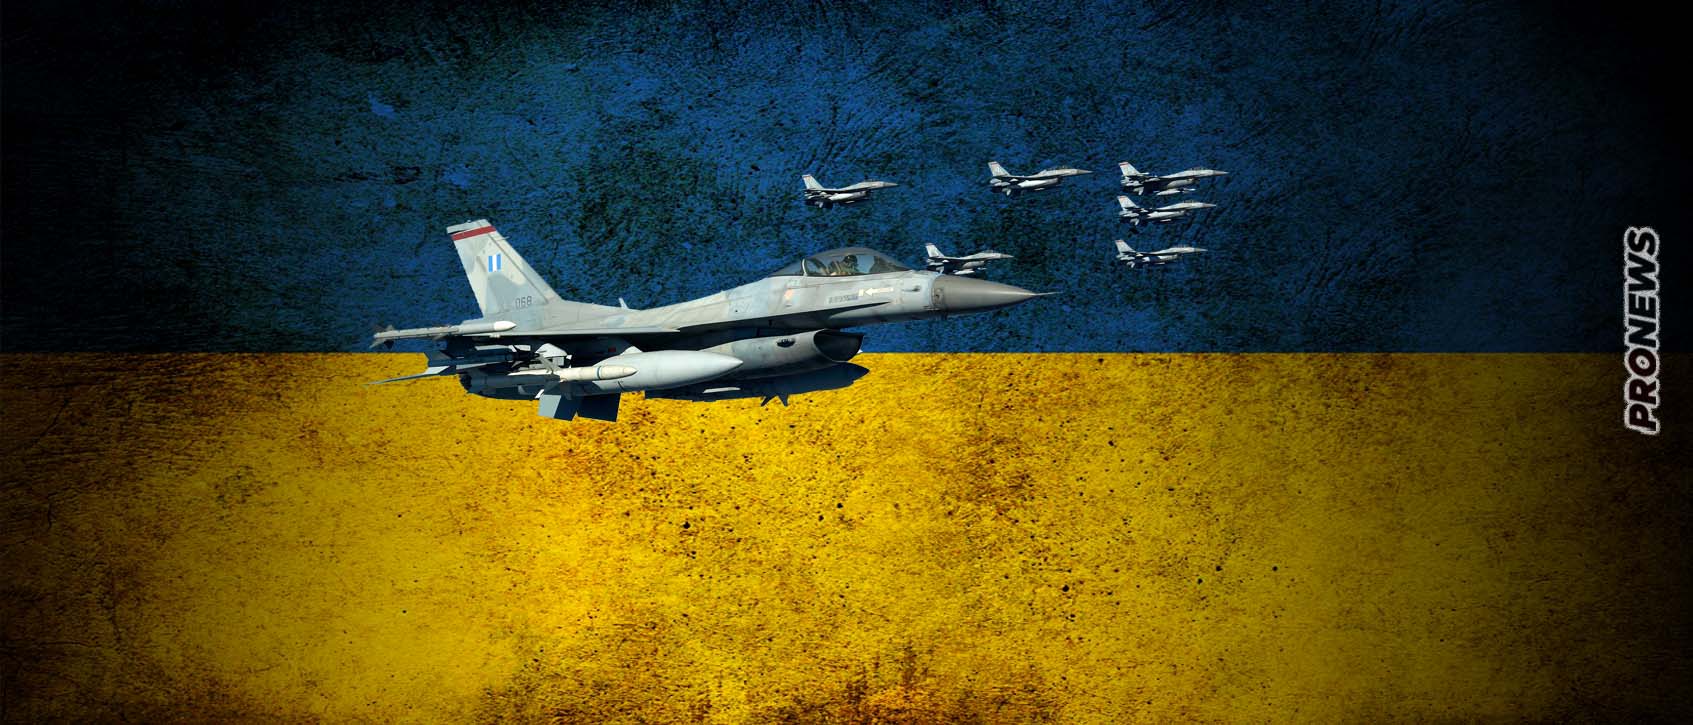 Πρόταση στην Ελλάδα να παραδώσει στην Ουκρανία 32 F-16 Block 30 στο πλαίσιο του «διεθνούς συνασπισμού» που συστήνει η Βρετανία!